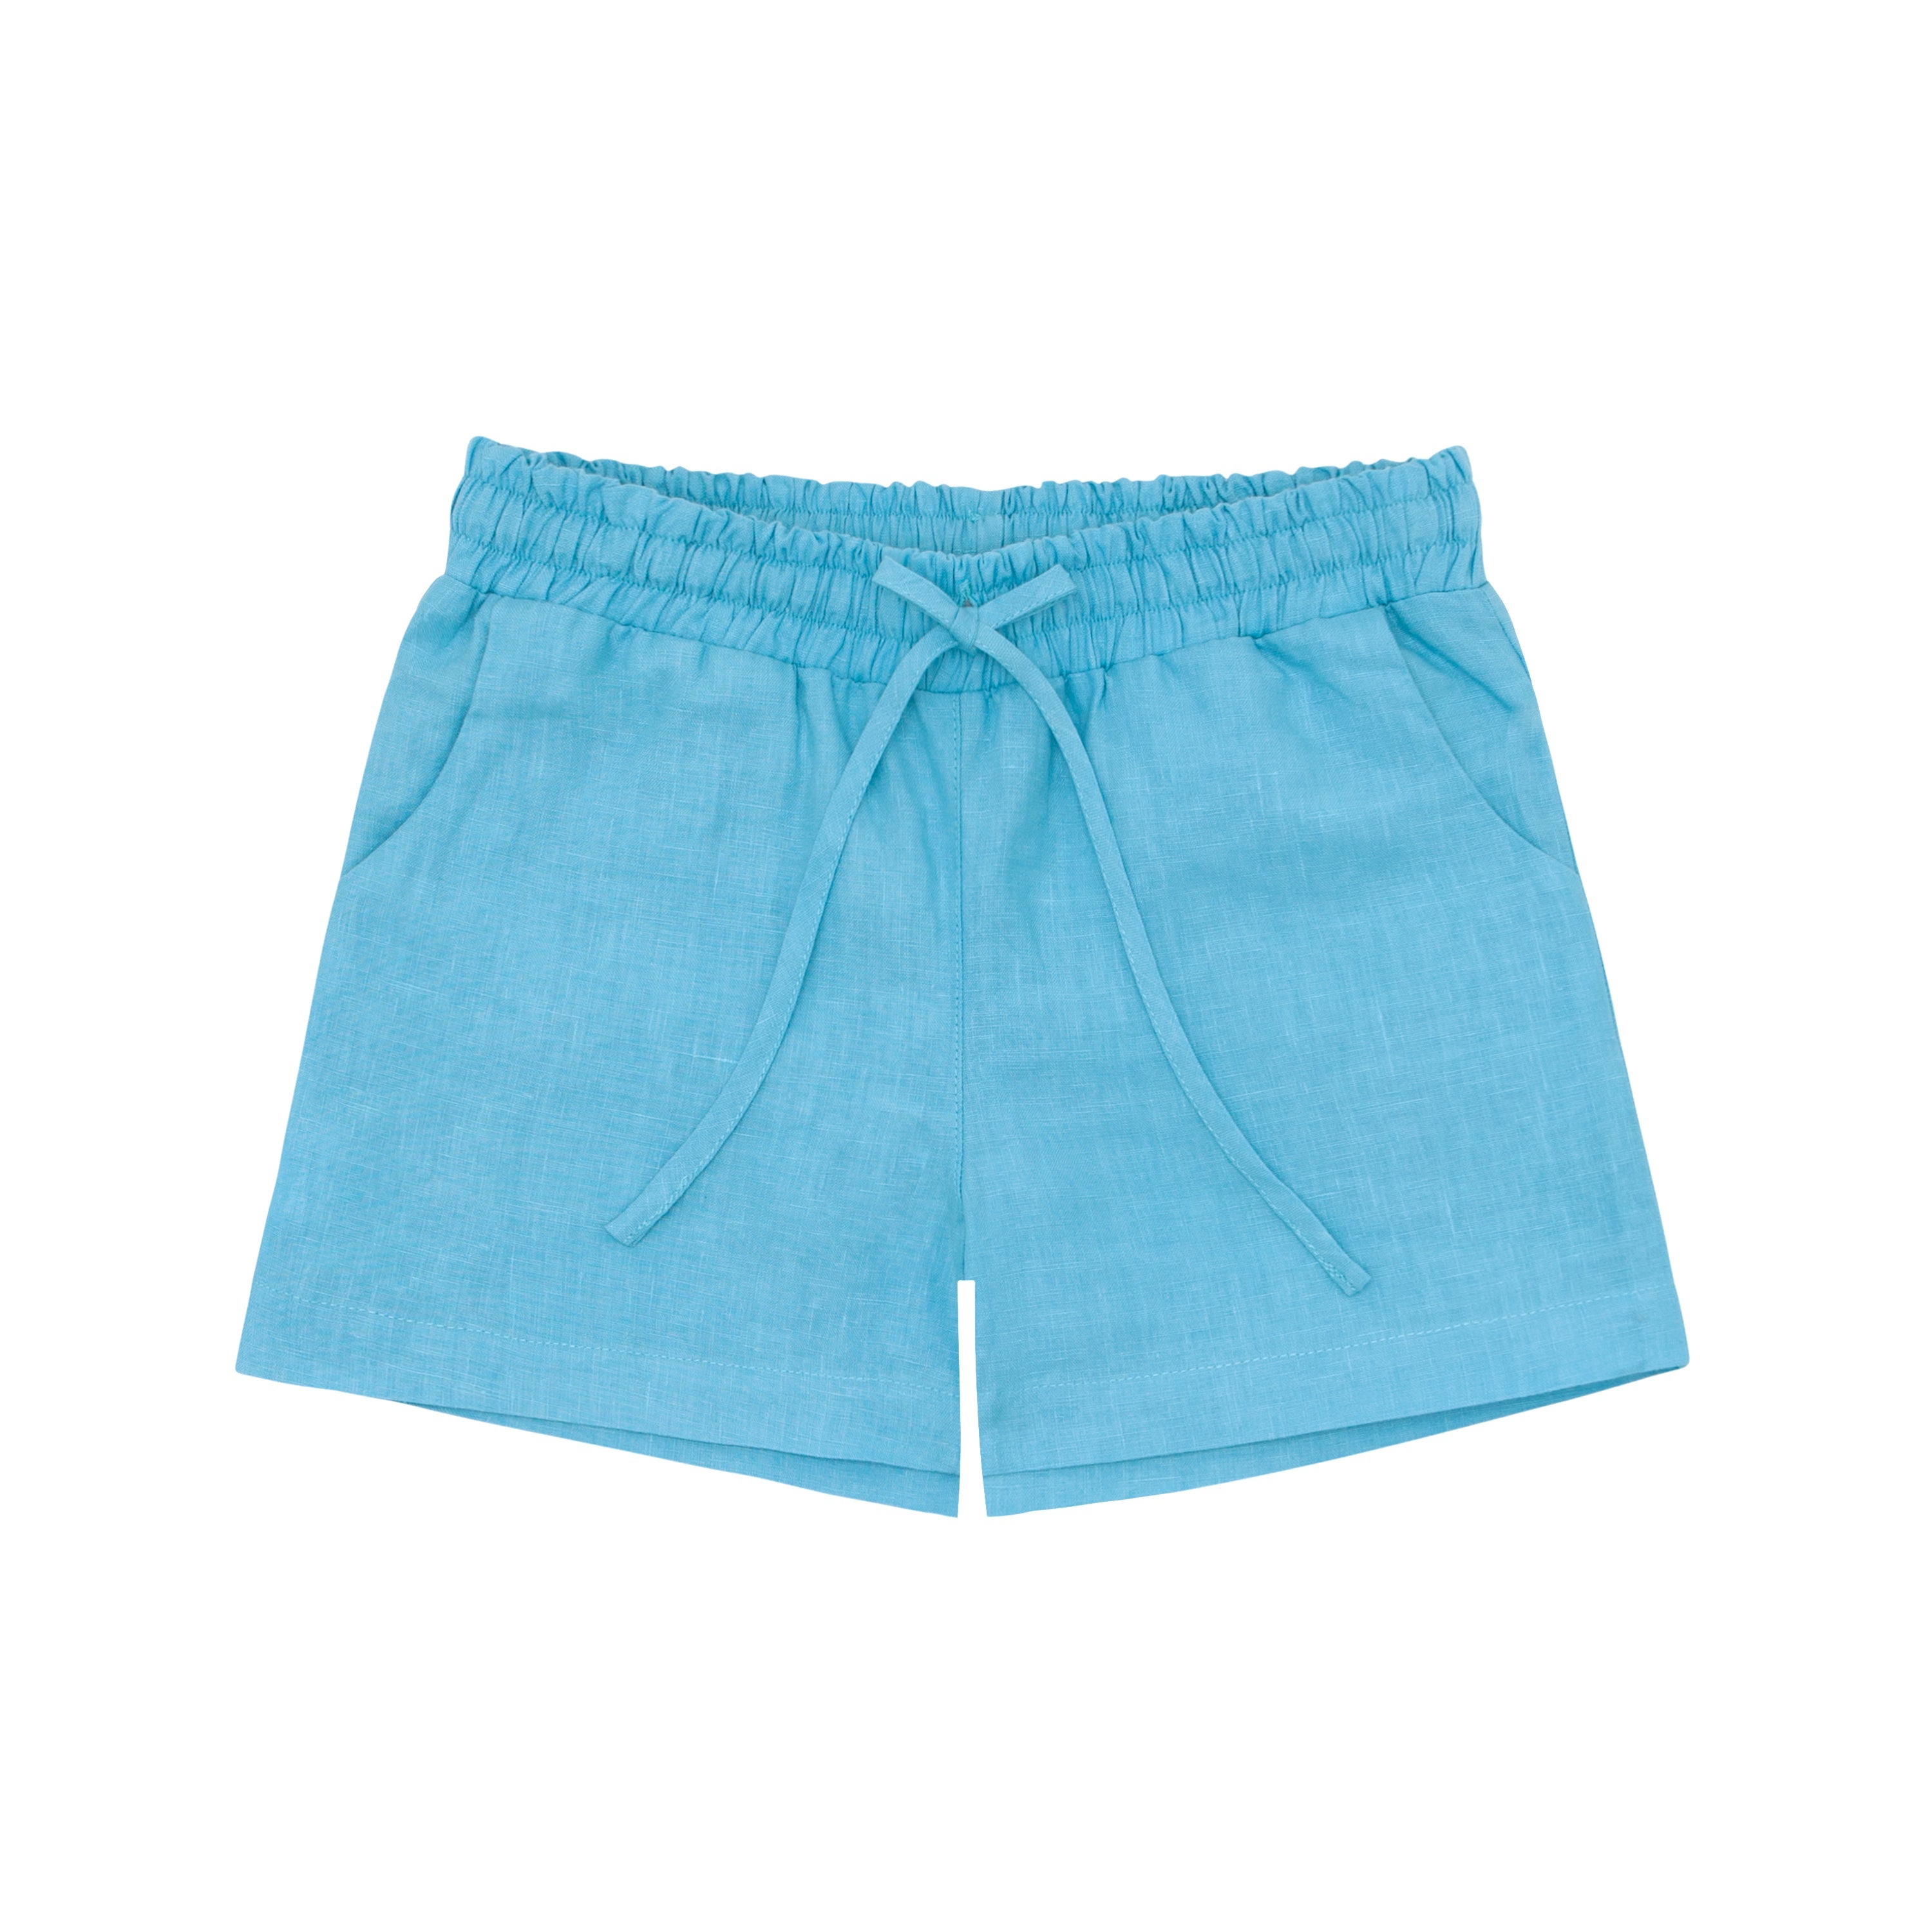 Fanm Mon x Minnow Boy's Linen Shorts (Pre-Order) by Fanm Mon